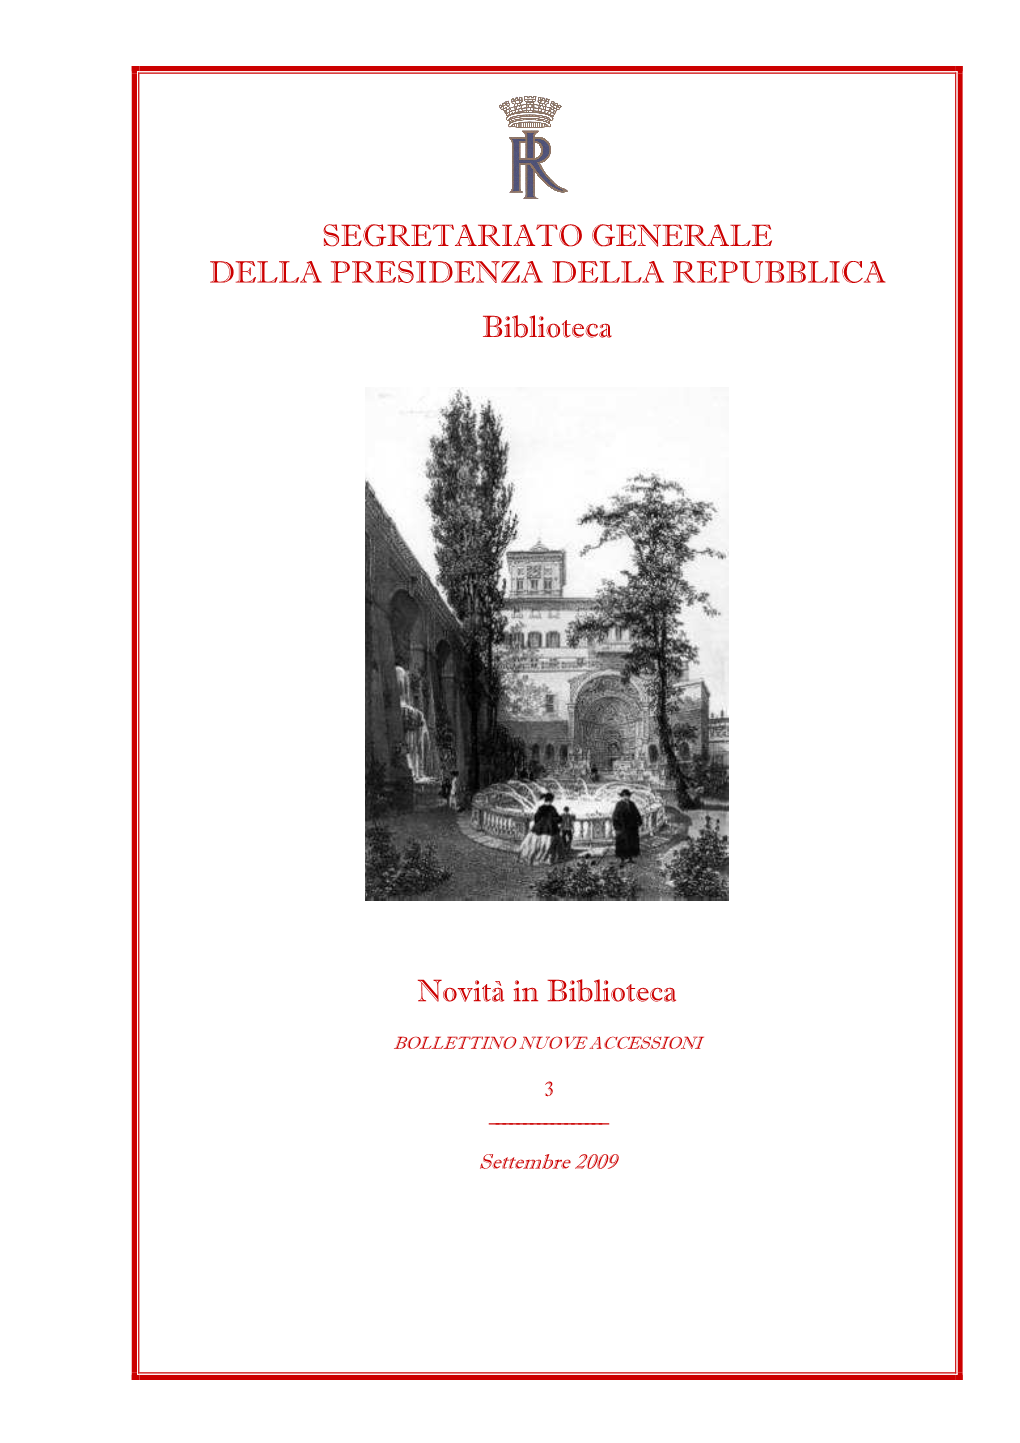 Bollettino Nuove Accessioni 3